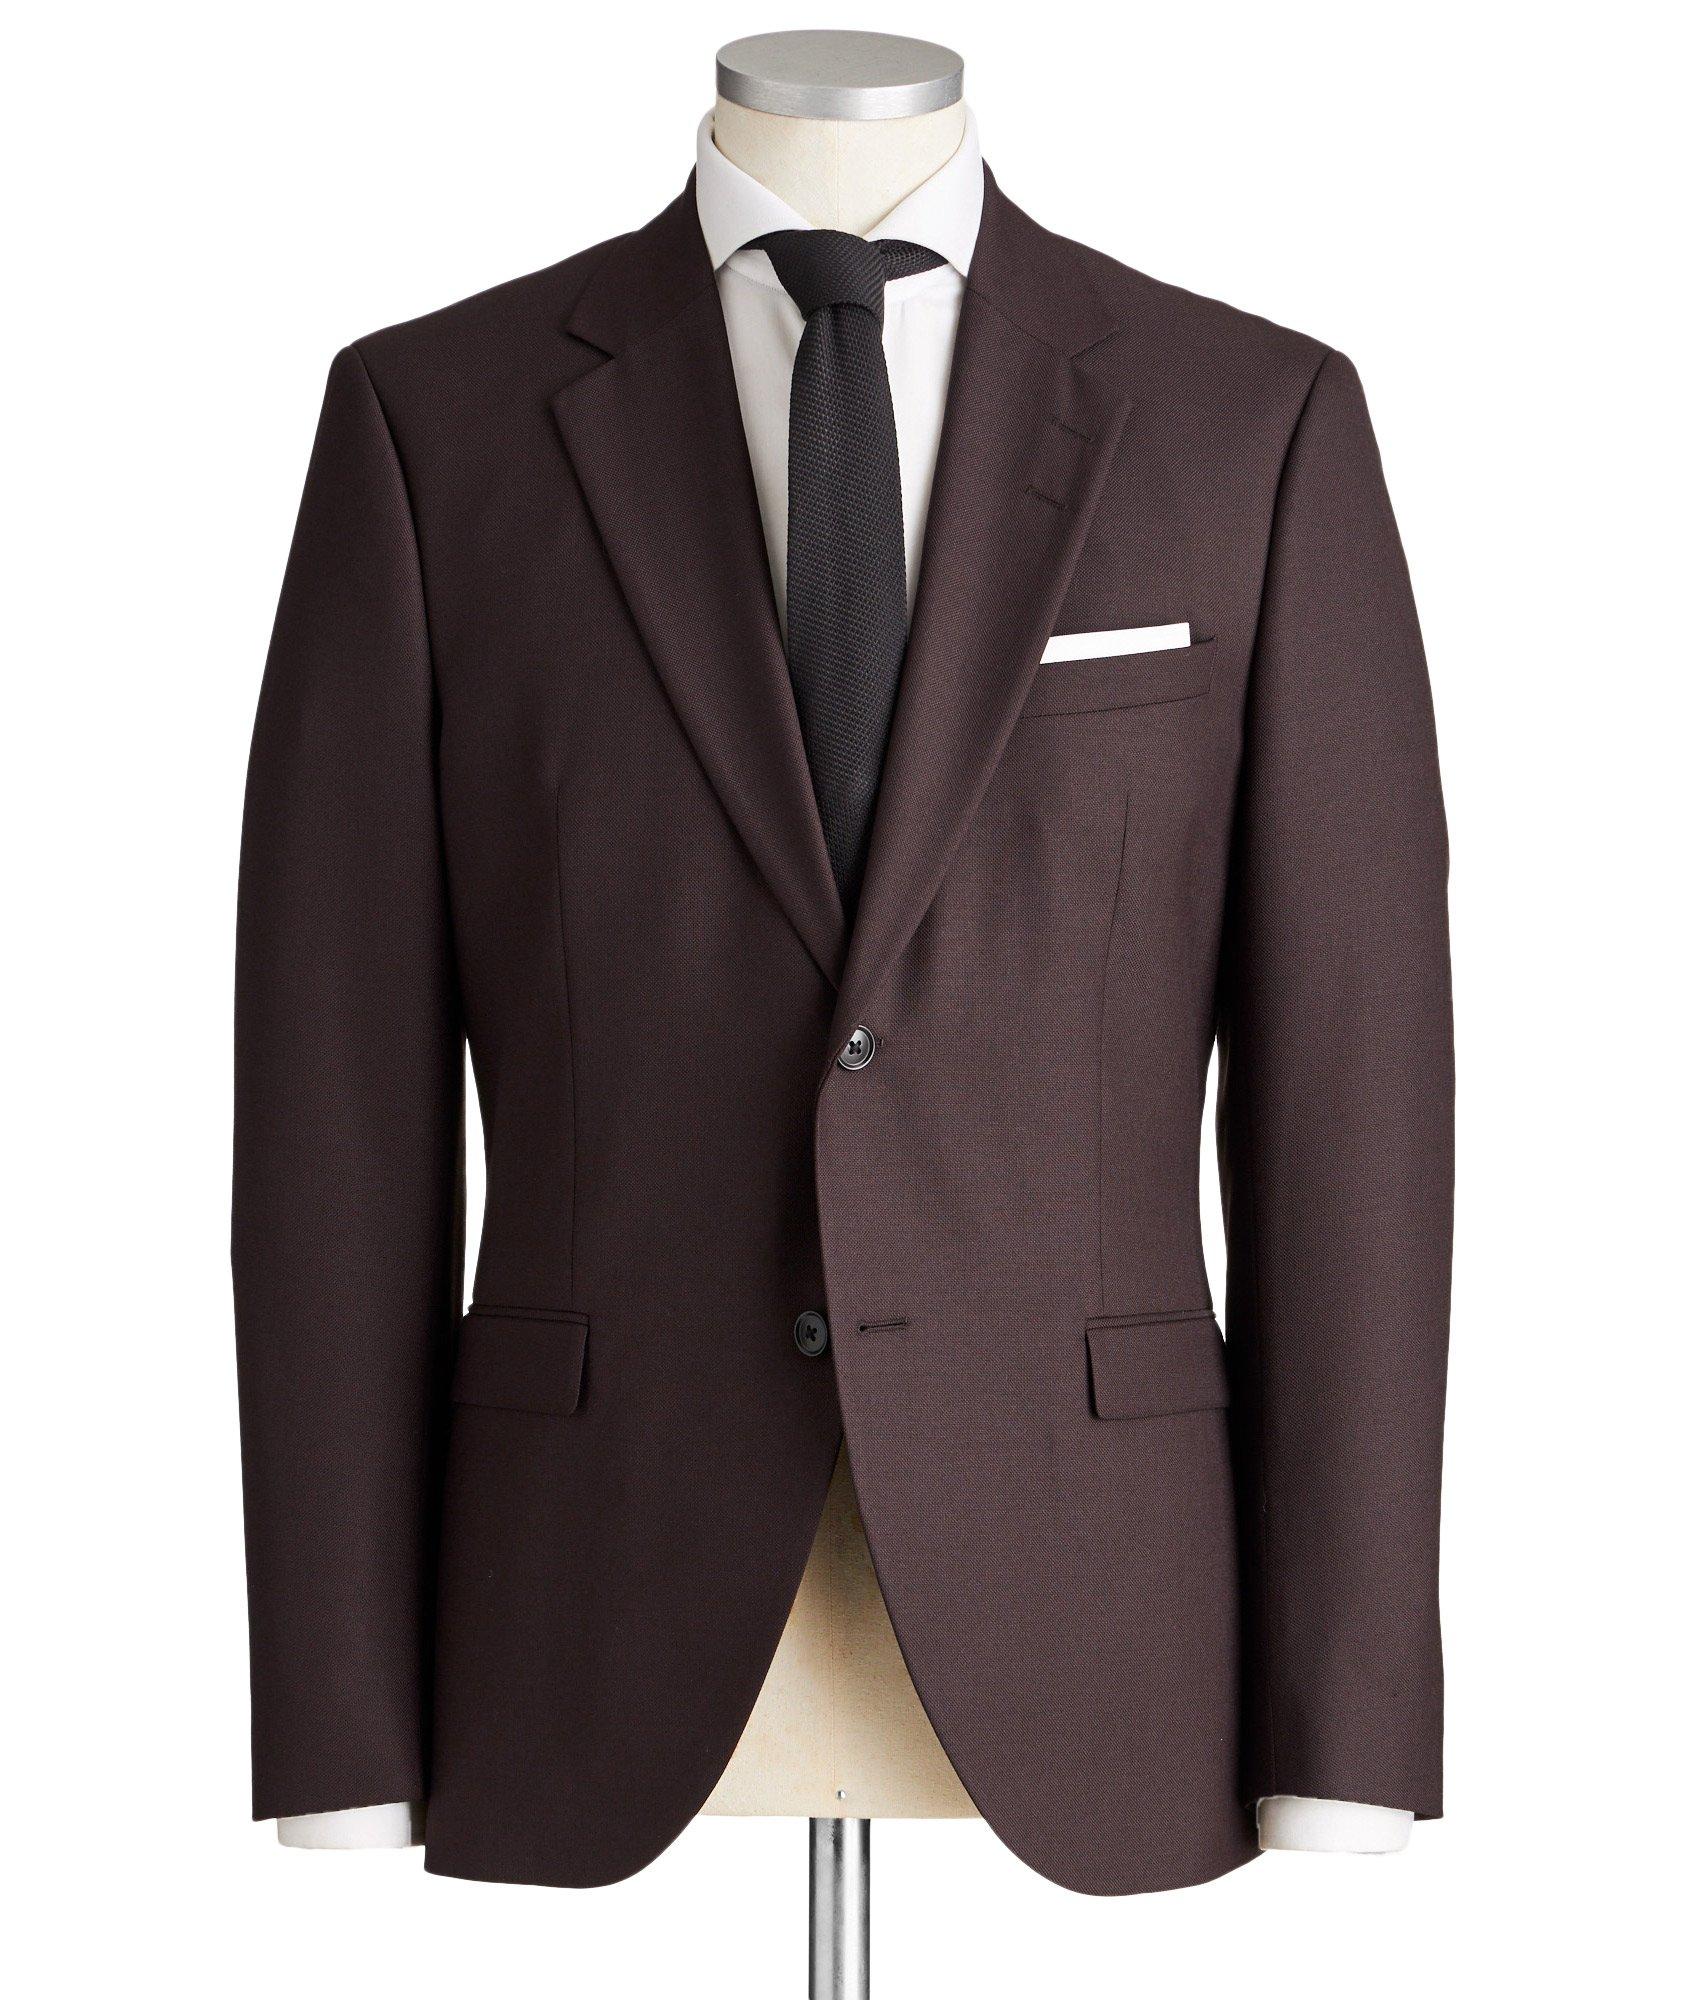 Jamonte Slim Fit Bird's Eye Wool-Blend Suit image 0